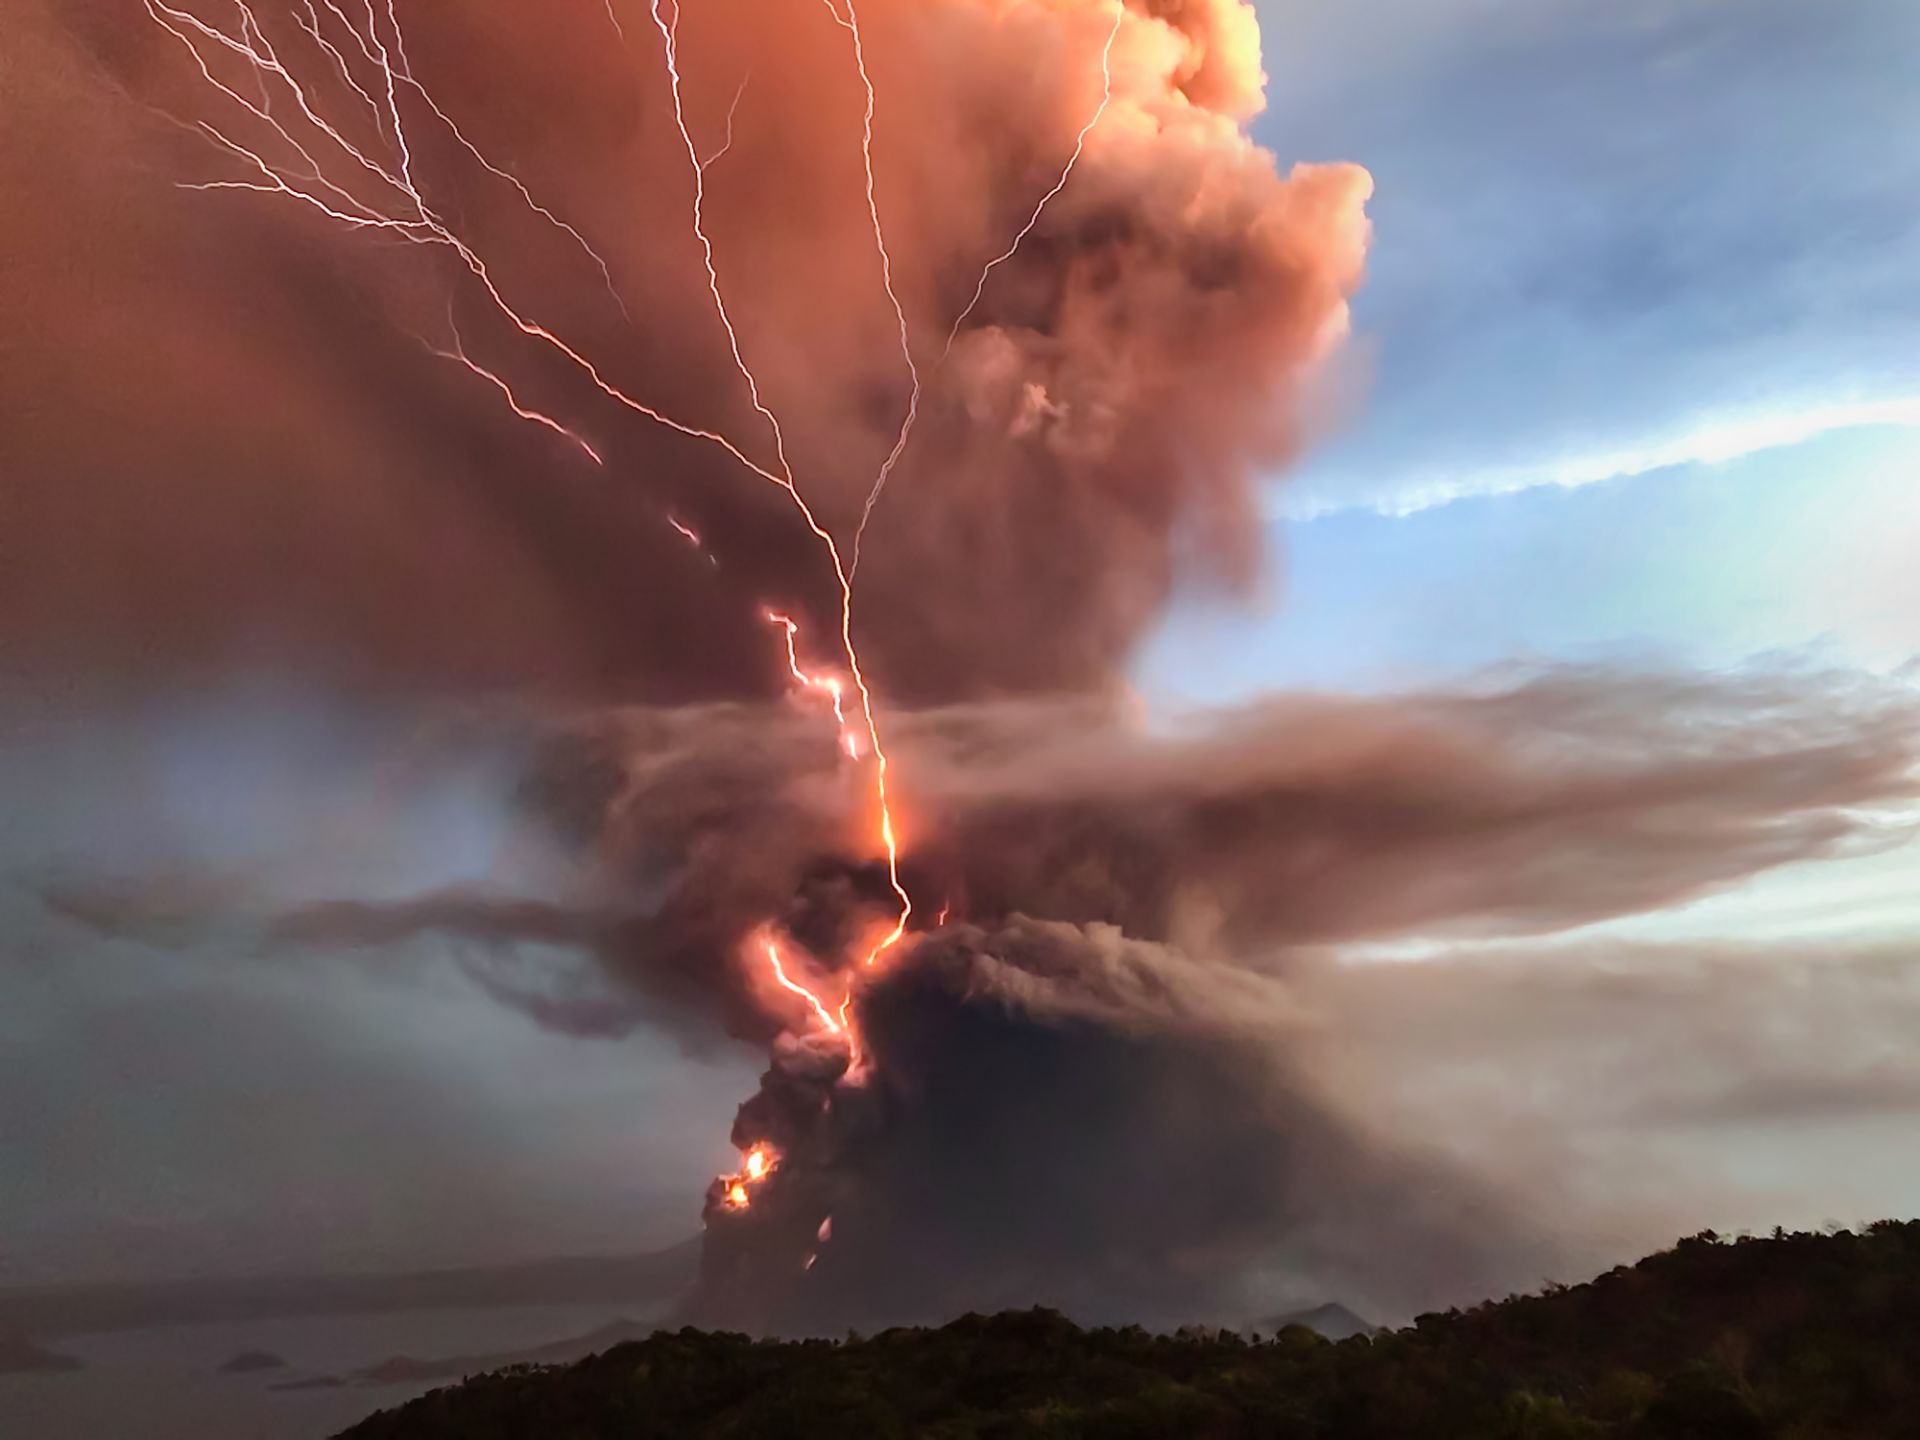 Вулканичните изригвания често предизвикват и светкавици, заради статичното електричество в облака от пепел